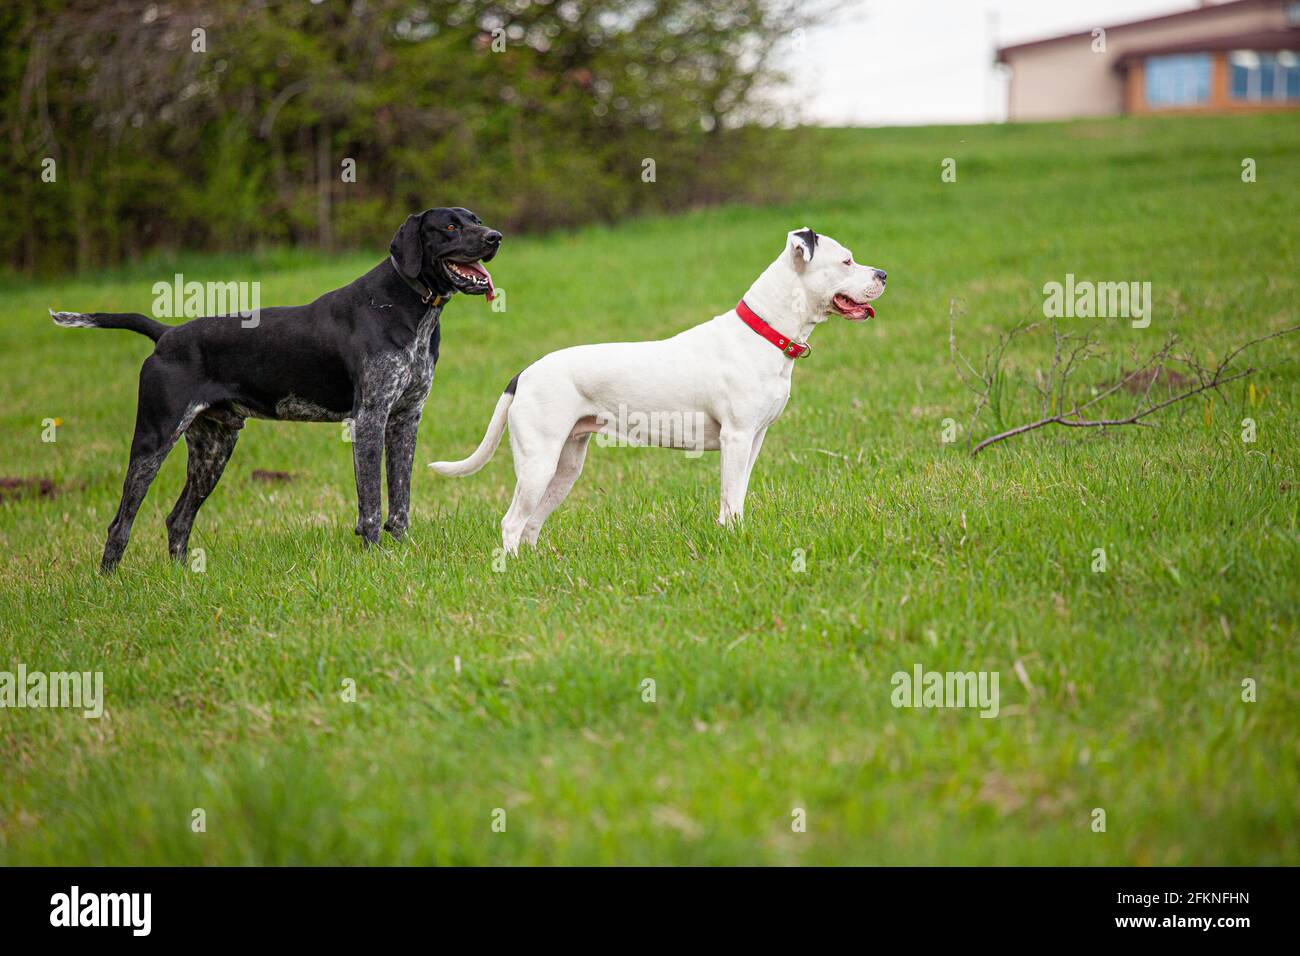 Deux chiens - un pitbull femelle blanc et un pointeur court allemand noir sont debout sur une pelouse en herbe verte à l'extérieur au printemps. Banque D'Images